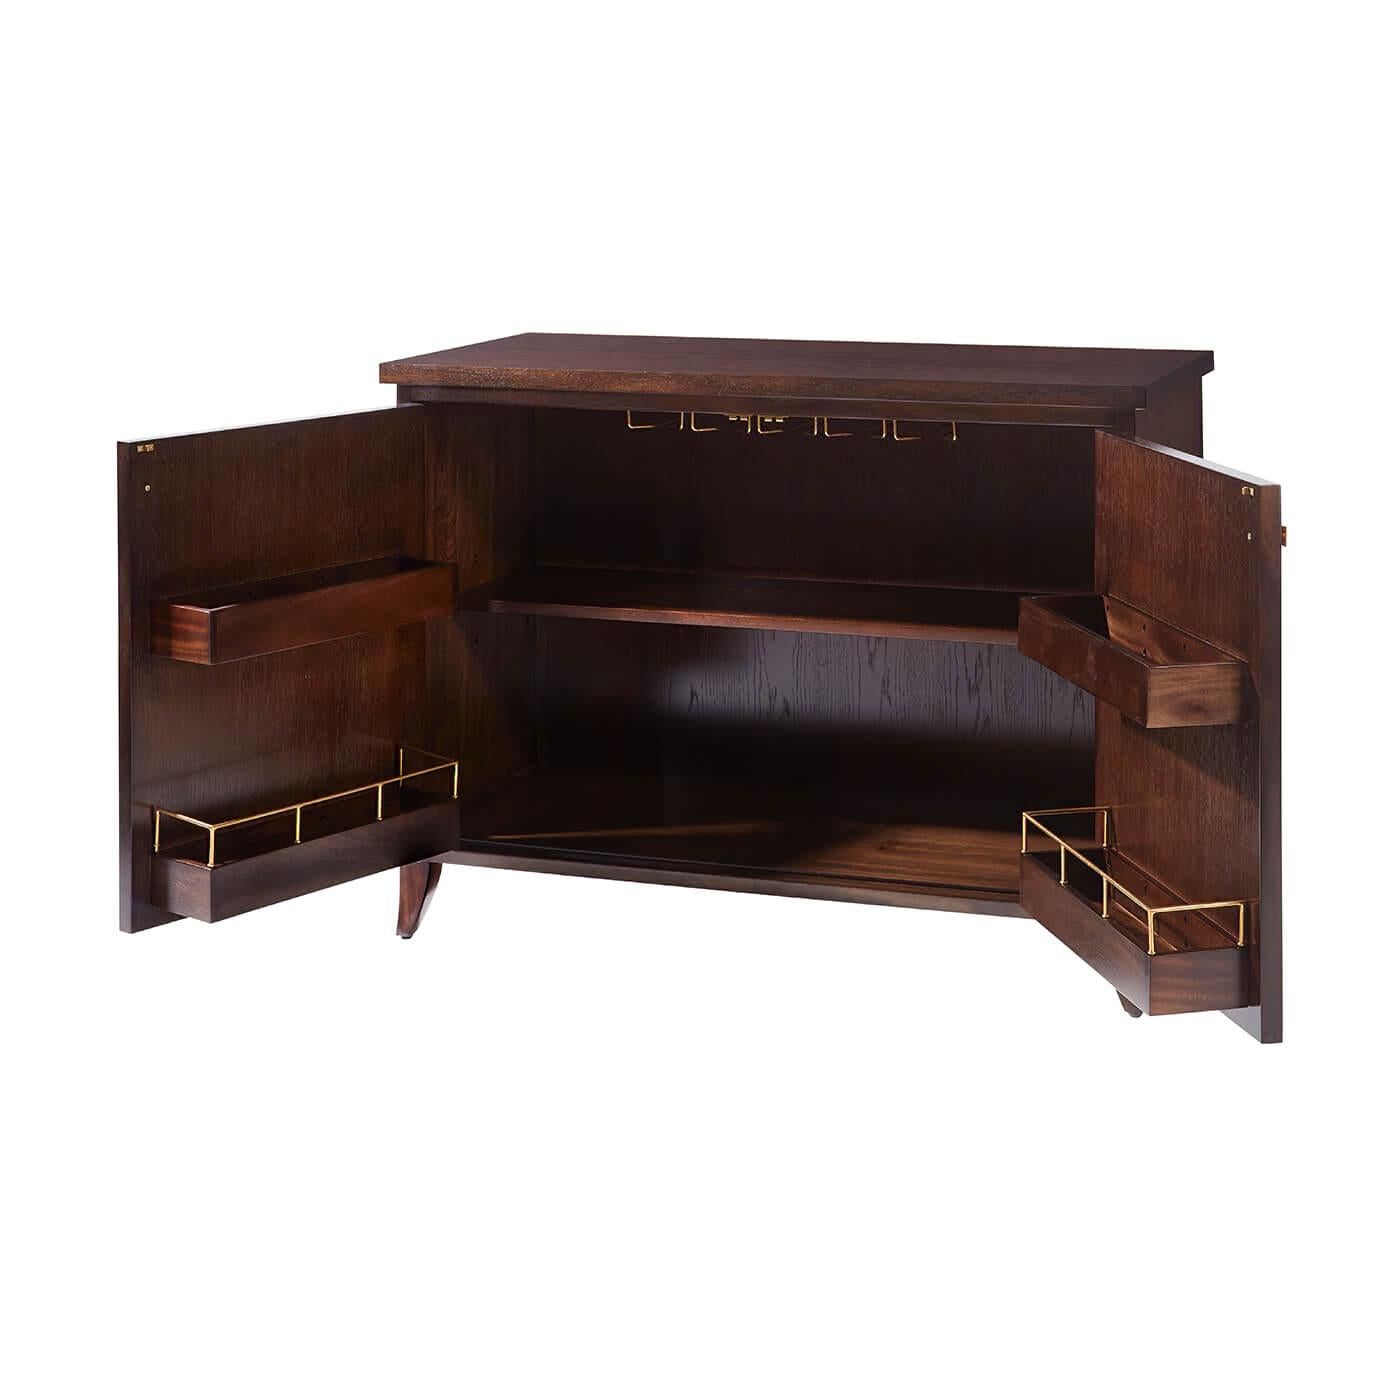 Un meuble de bar français de style Art déco, rappelant les années 1920. Décorée de verre églomisé et de lignes peintes en doré. L'armoire classique est ornée de garnitures et de poignées géométriques en laiton. L'intérieur est équipé de casiers et